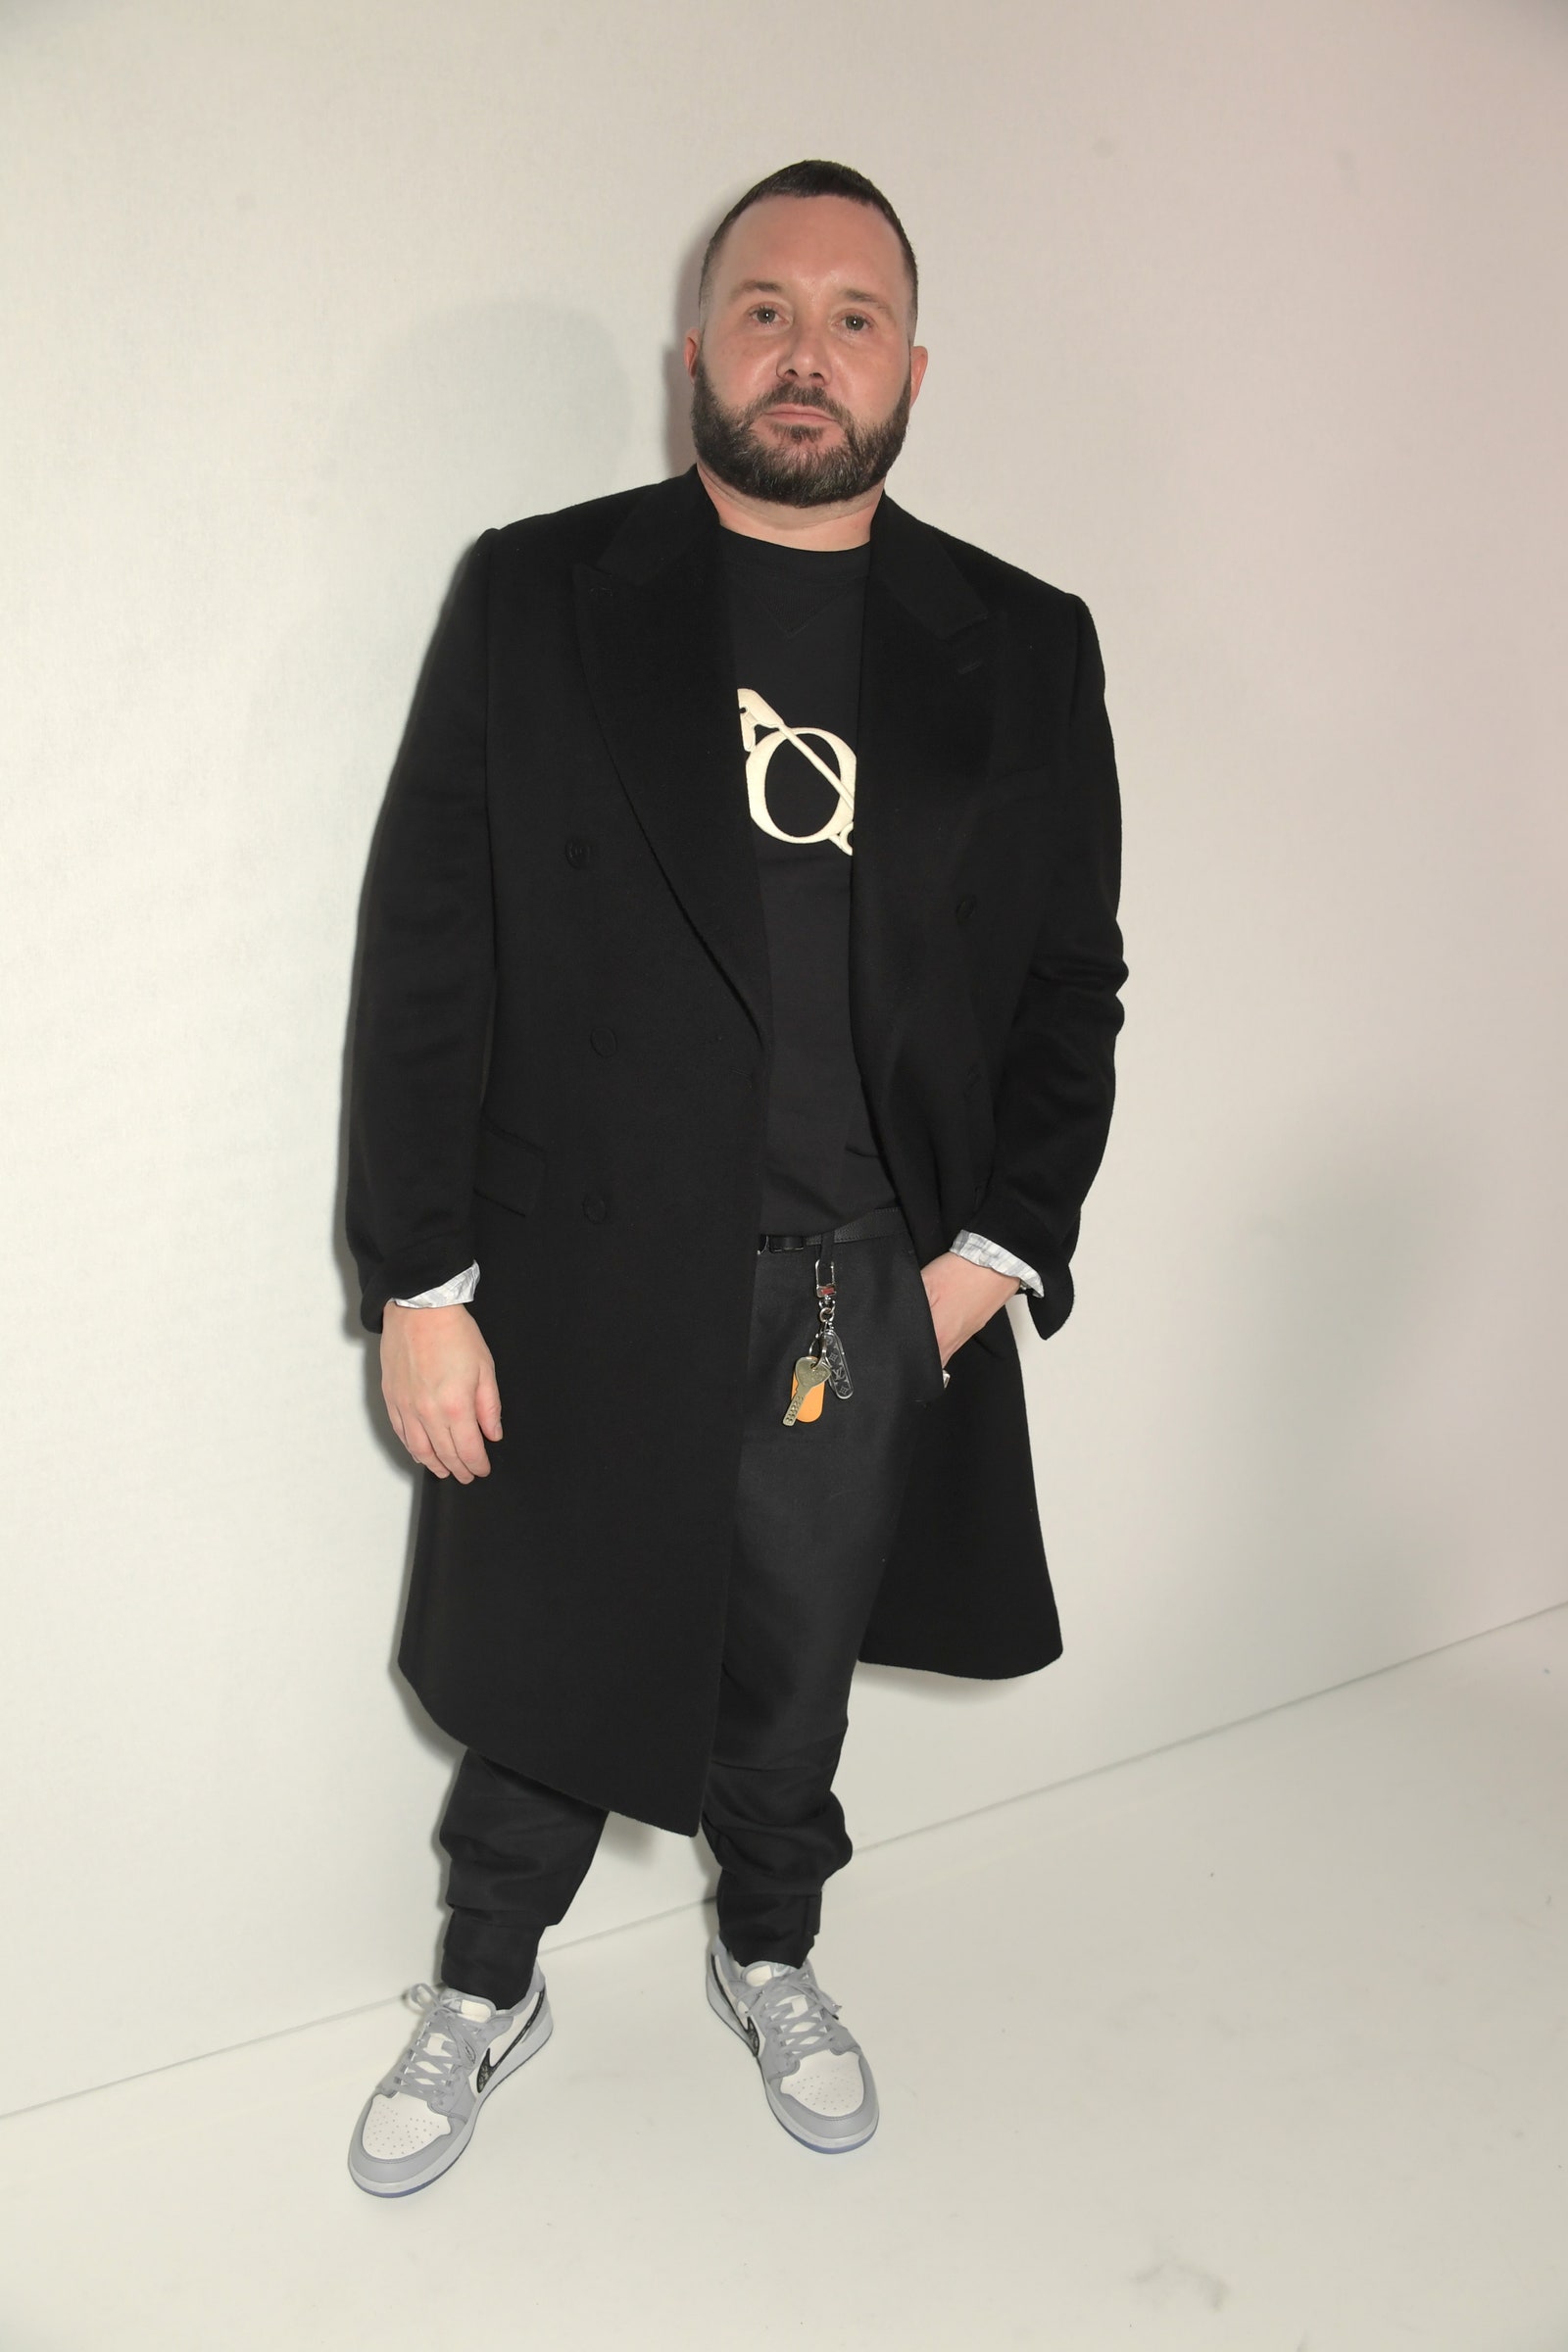 Ким Джонс получил должность в Fendi — плюсом к позиции креативного директора Dior Homme